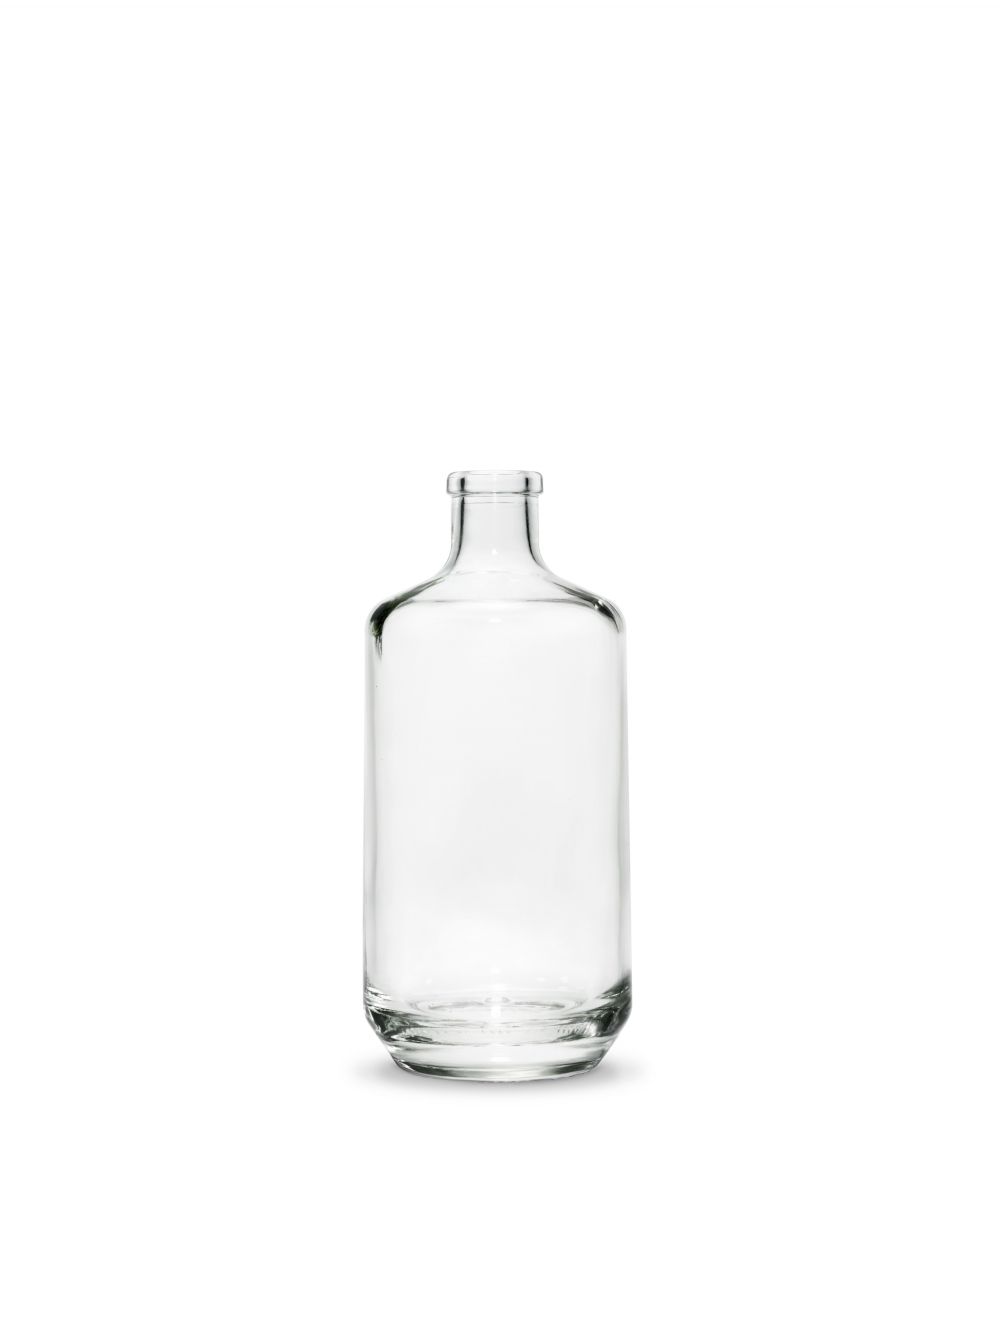 Kyrö Bottle Bottle series. Designed for Kyrö Distillery Company by Mikko Laakkonen.